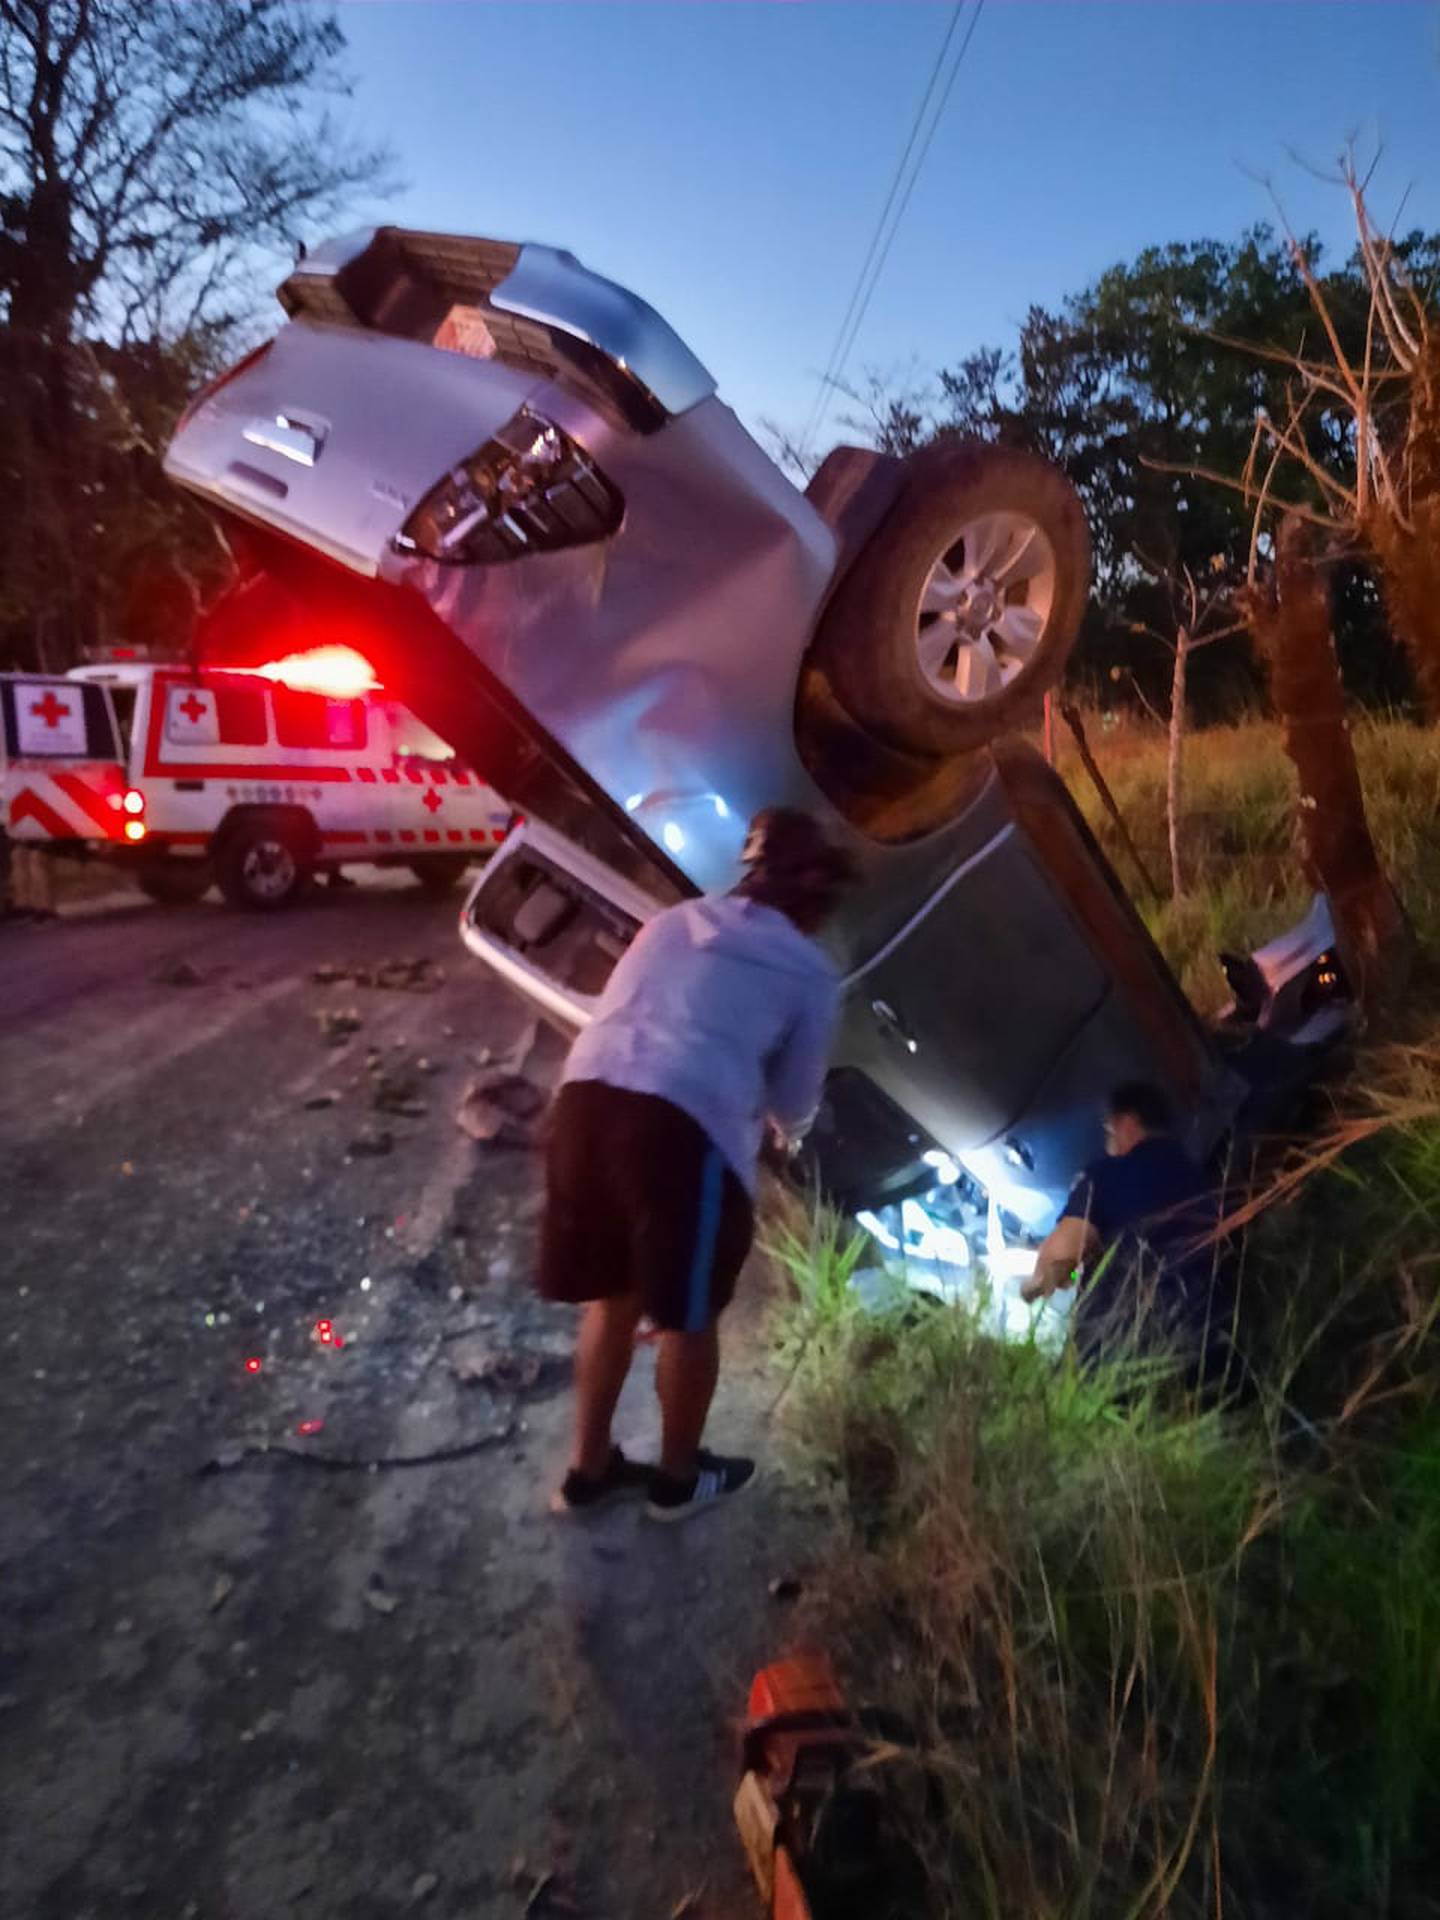 Pese a lo aparatoso del accidente el Machillo solo sufrió golpes leves. Foto cortesía.